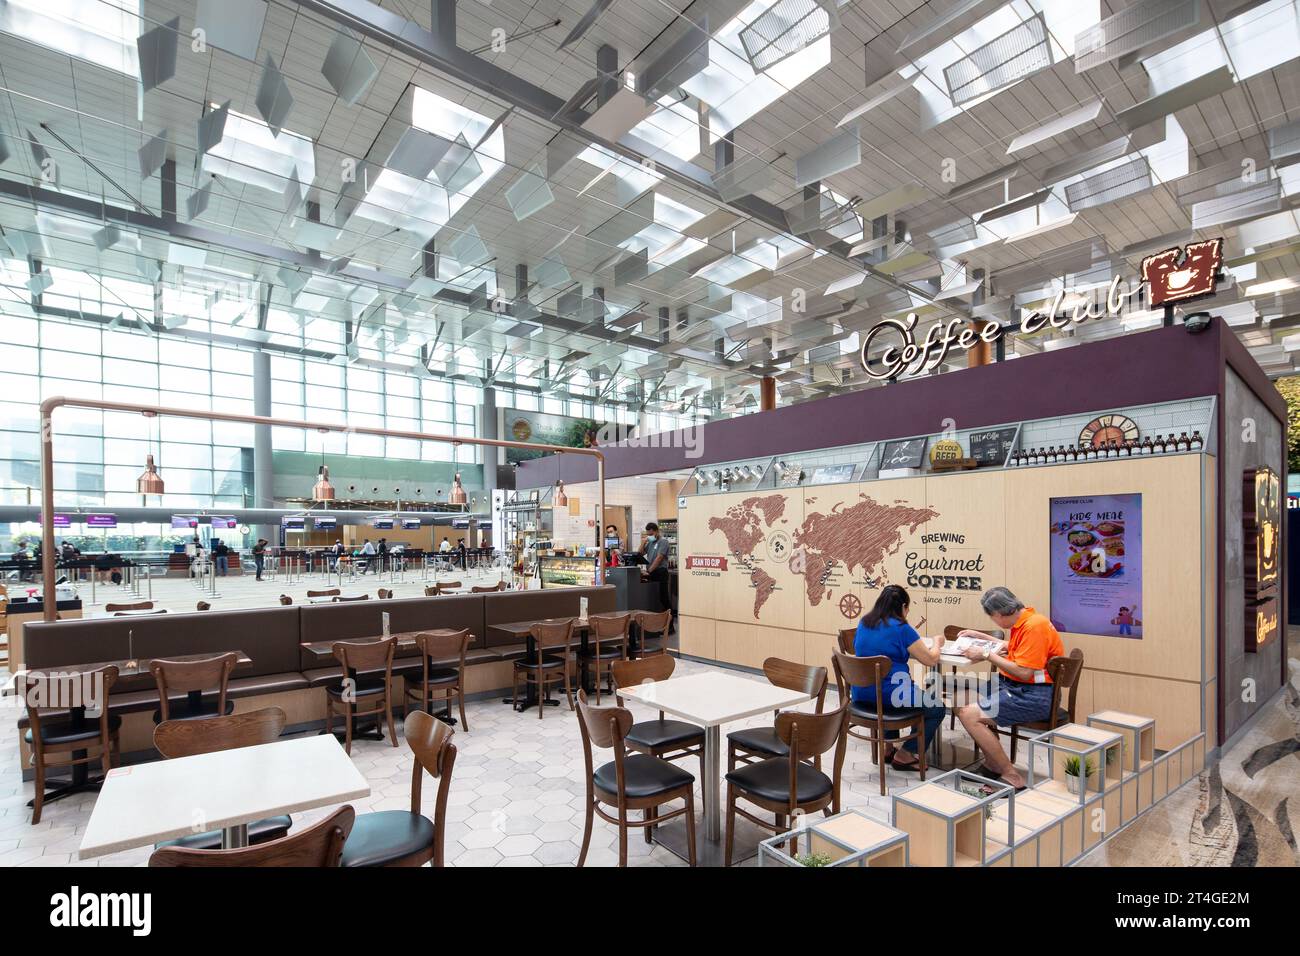 Il design del Coffee club Cafe al Terminal 3 dell'Aeroporto Changi consente ai visitatori di rilassarsi e rilassarsi prima della partenza. Foto Stock